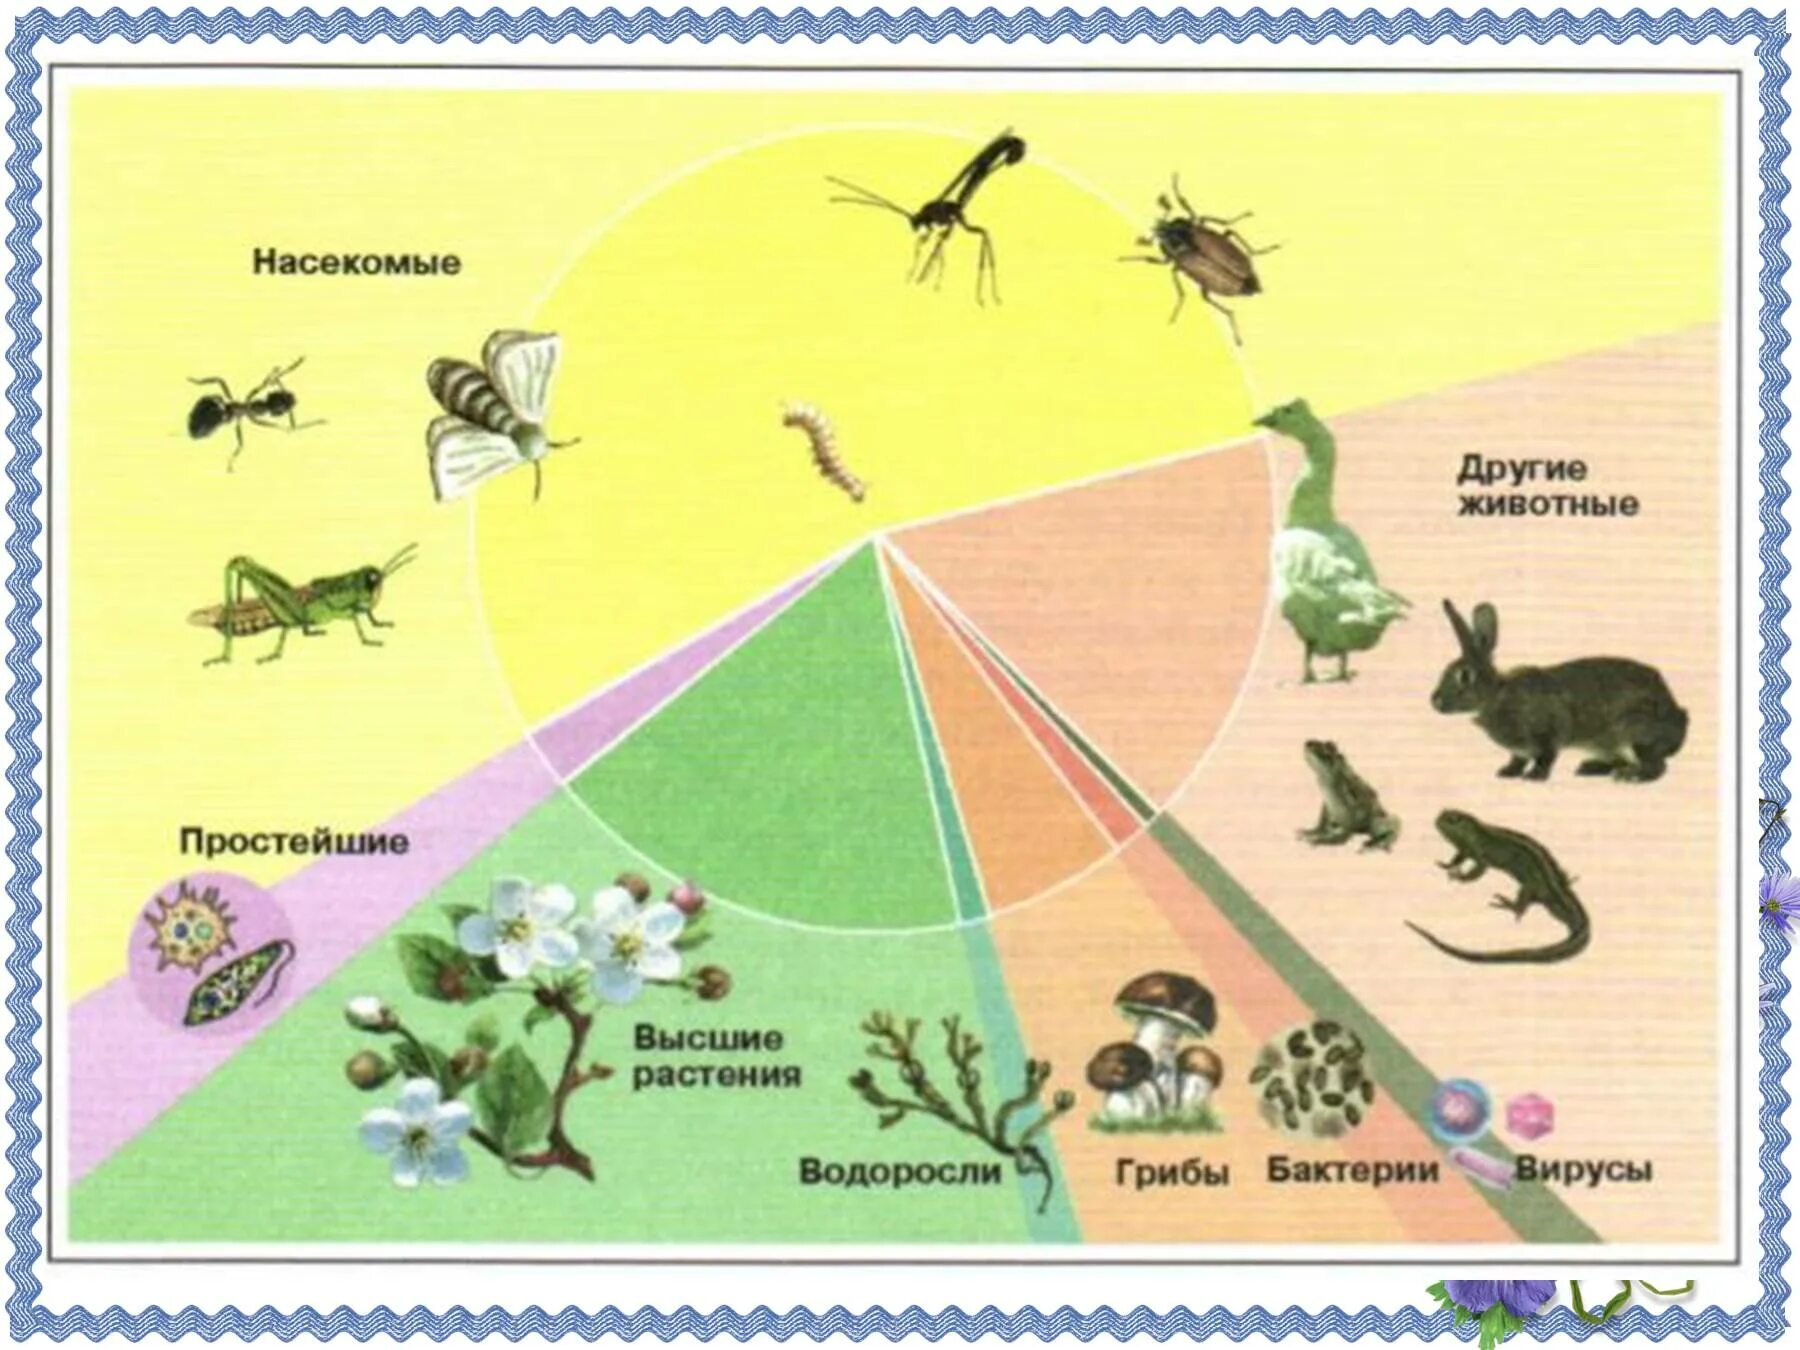 Все живые организмы в том числе. Число видов насекомых. Число видов живых организмов на земле. Численность видов животных. Многообразие видов на земле.